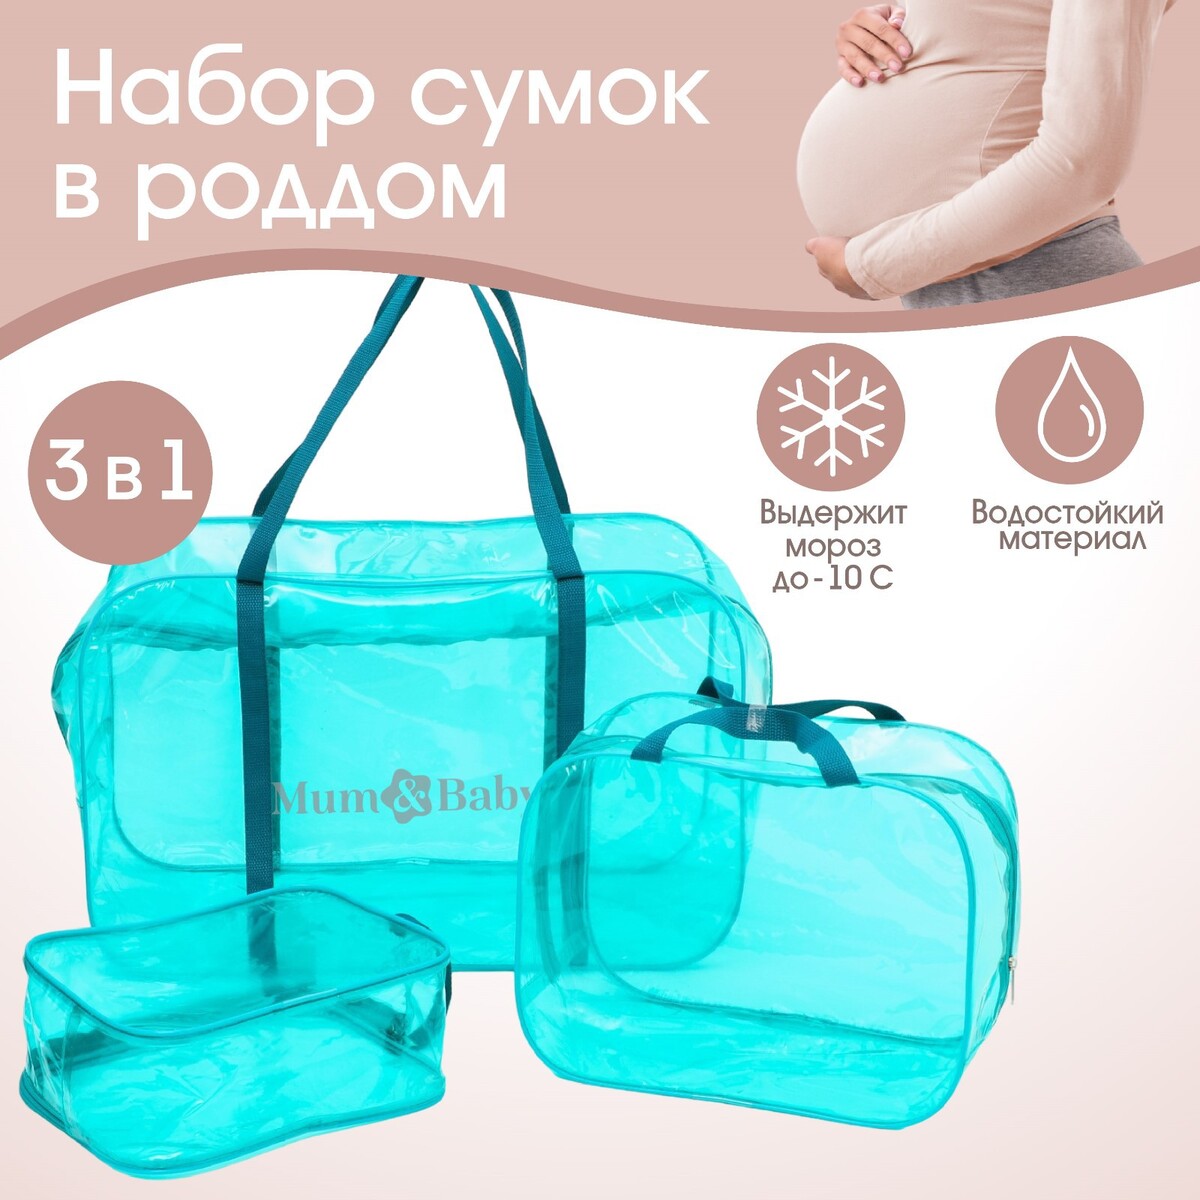 Набор сумок в роддом, 3 шт., цветной пвх, цвет бирюзовый Mum&Baby